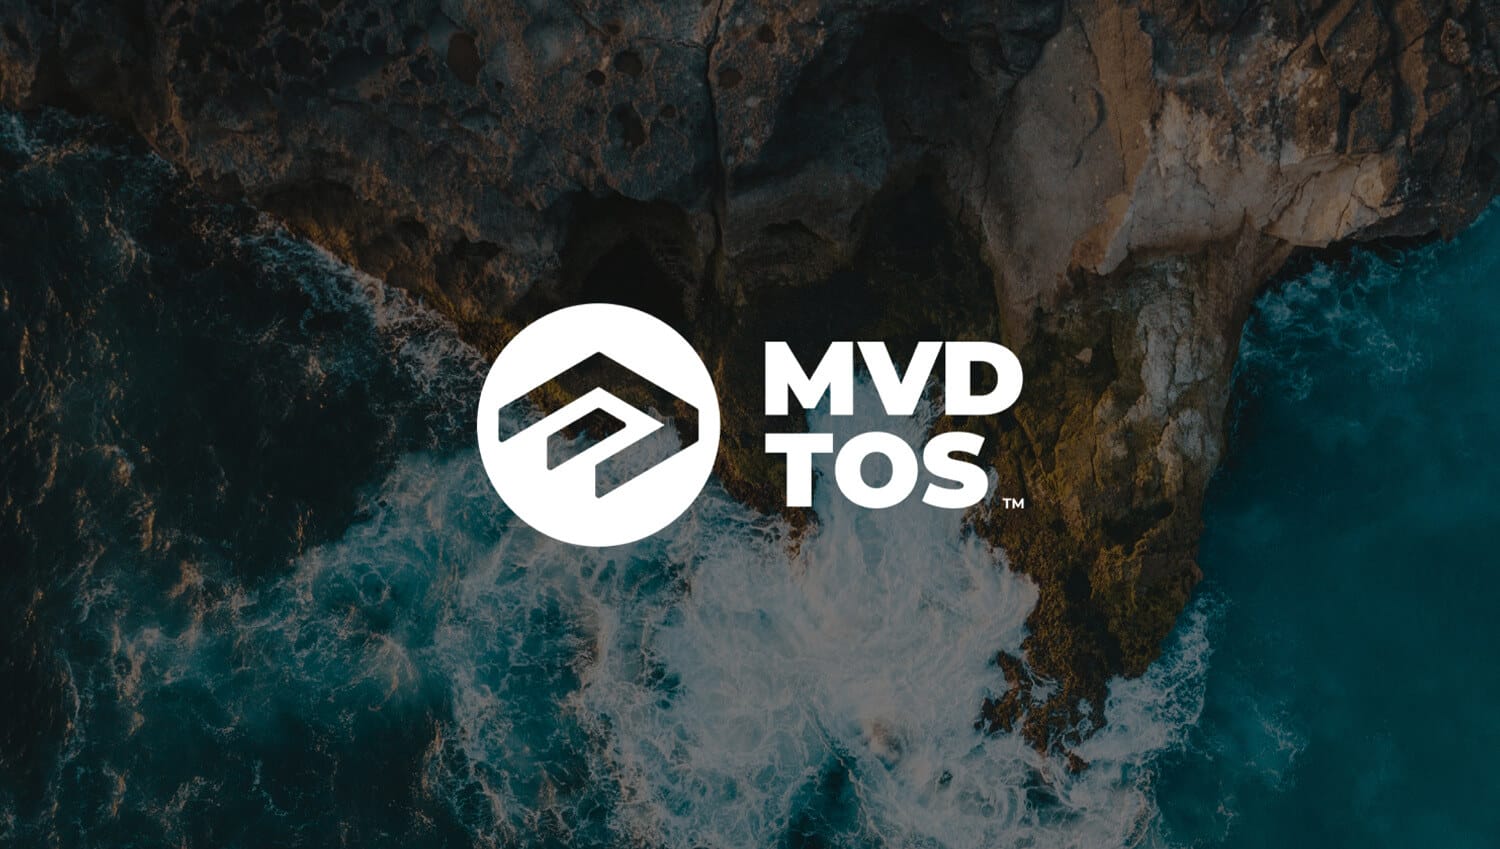 The logo for mvd tos.